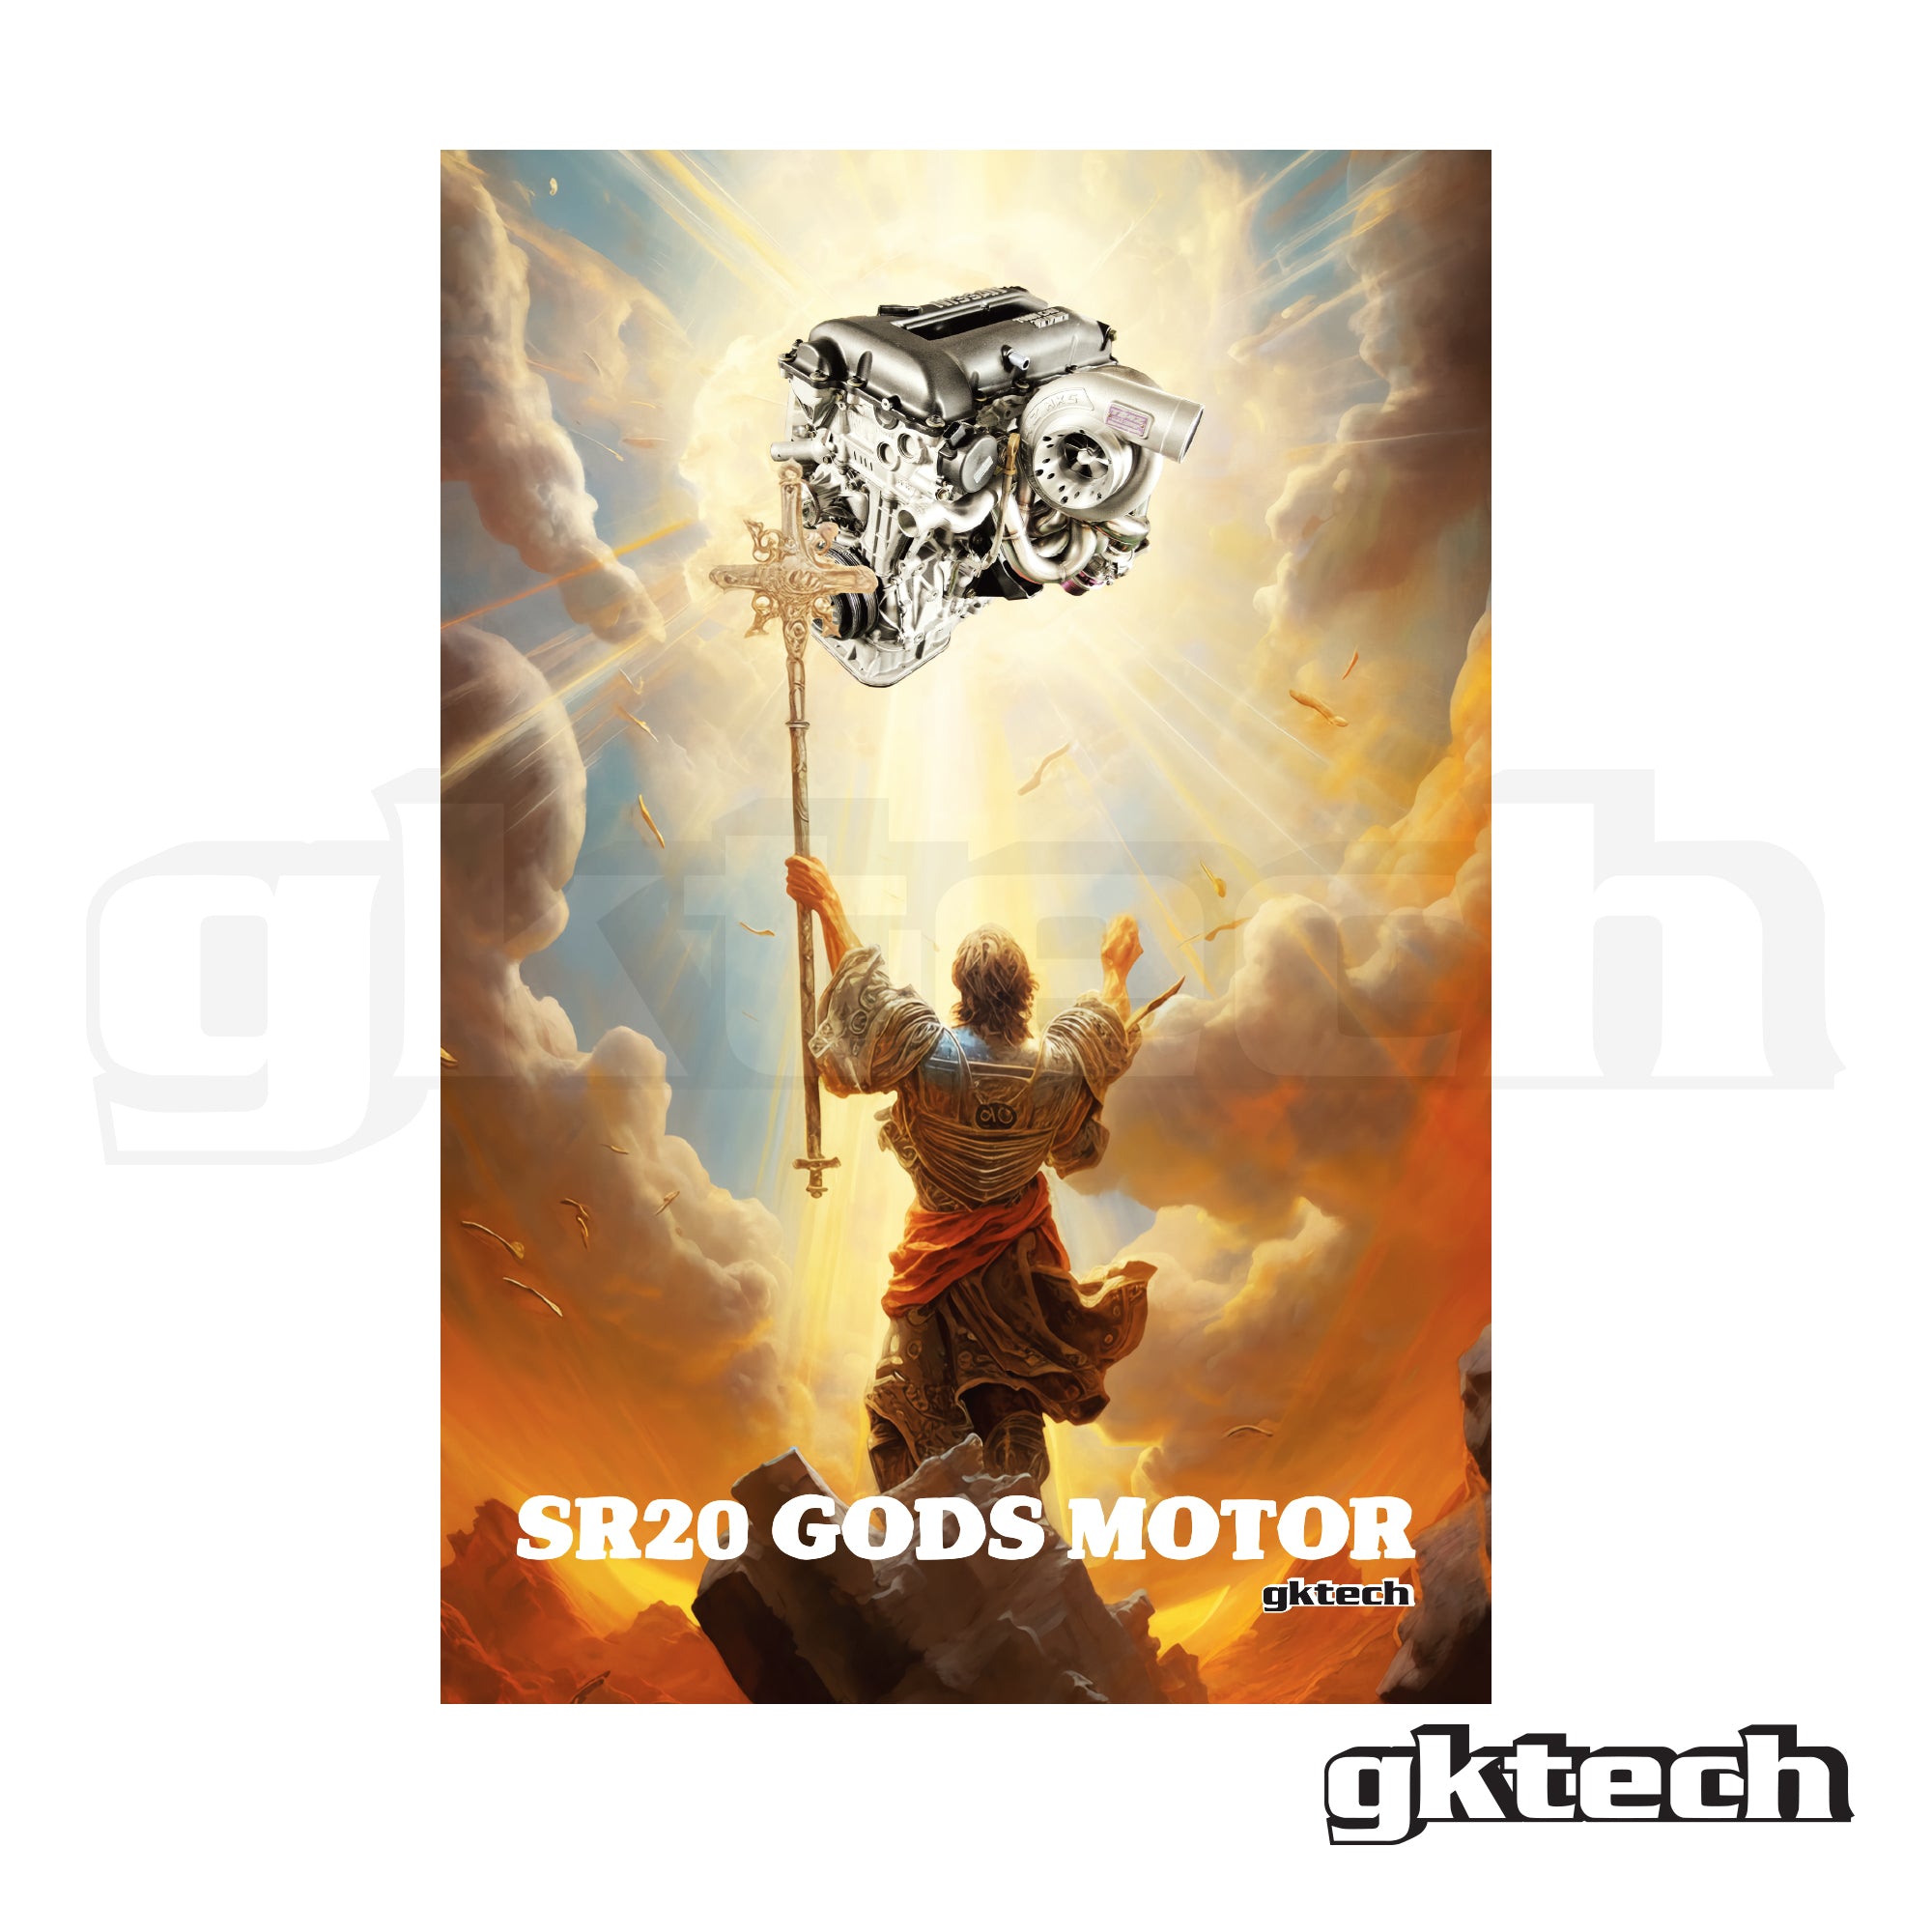 SR20 Gods motor garage banner